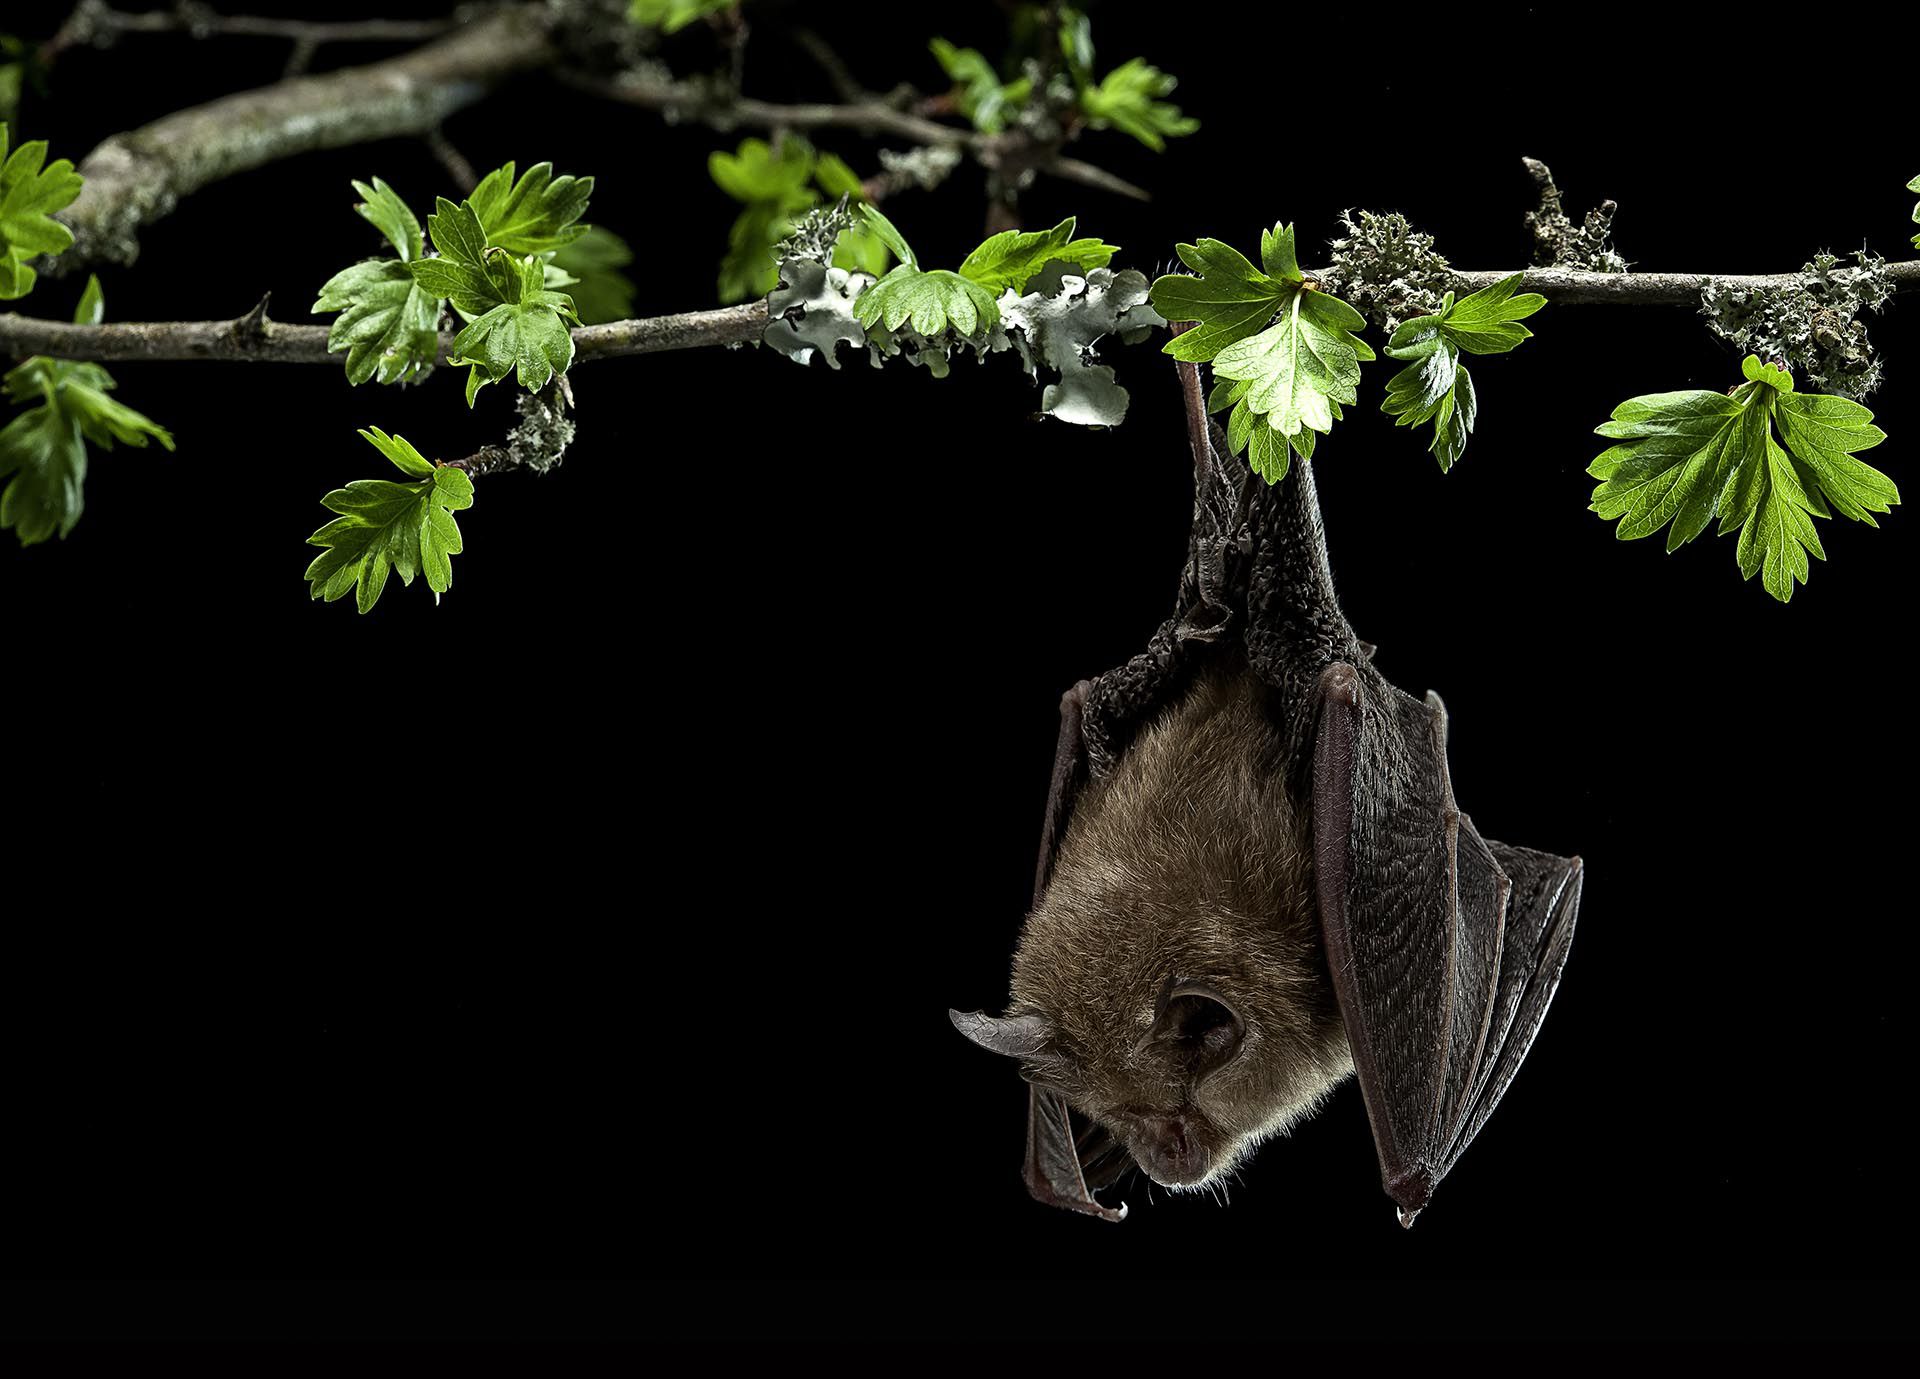 Los murciélagos pueden albergar virus que matarían a la mayoría de los demás mamíferos. Se calcula que actúan como reservorios de unos 72.000 virus
(Getty Images)